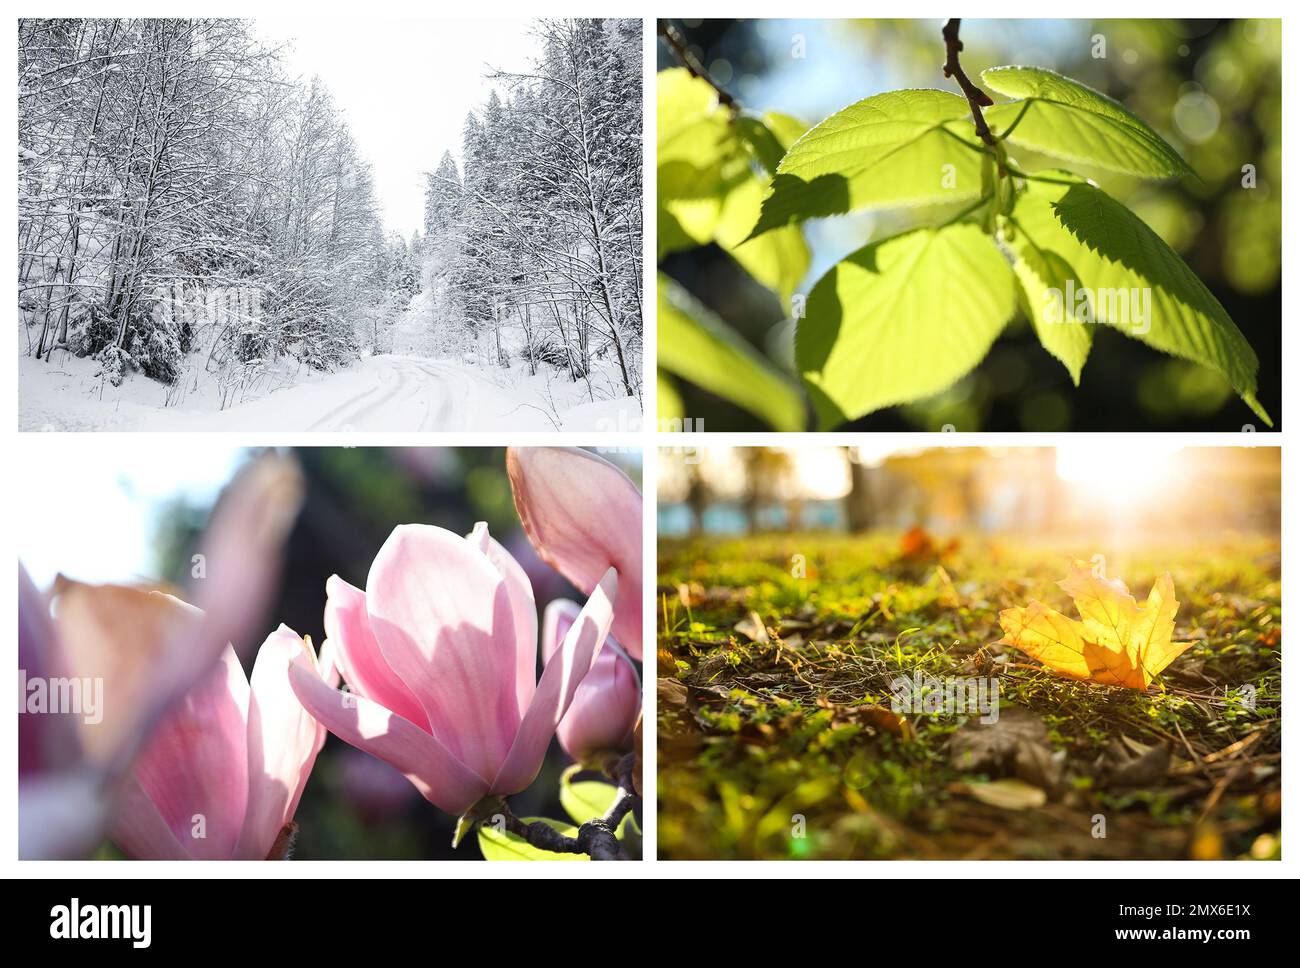 Wunderschöne Fotos der Natur. Four Seasons Collage Stockfoto